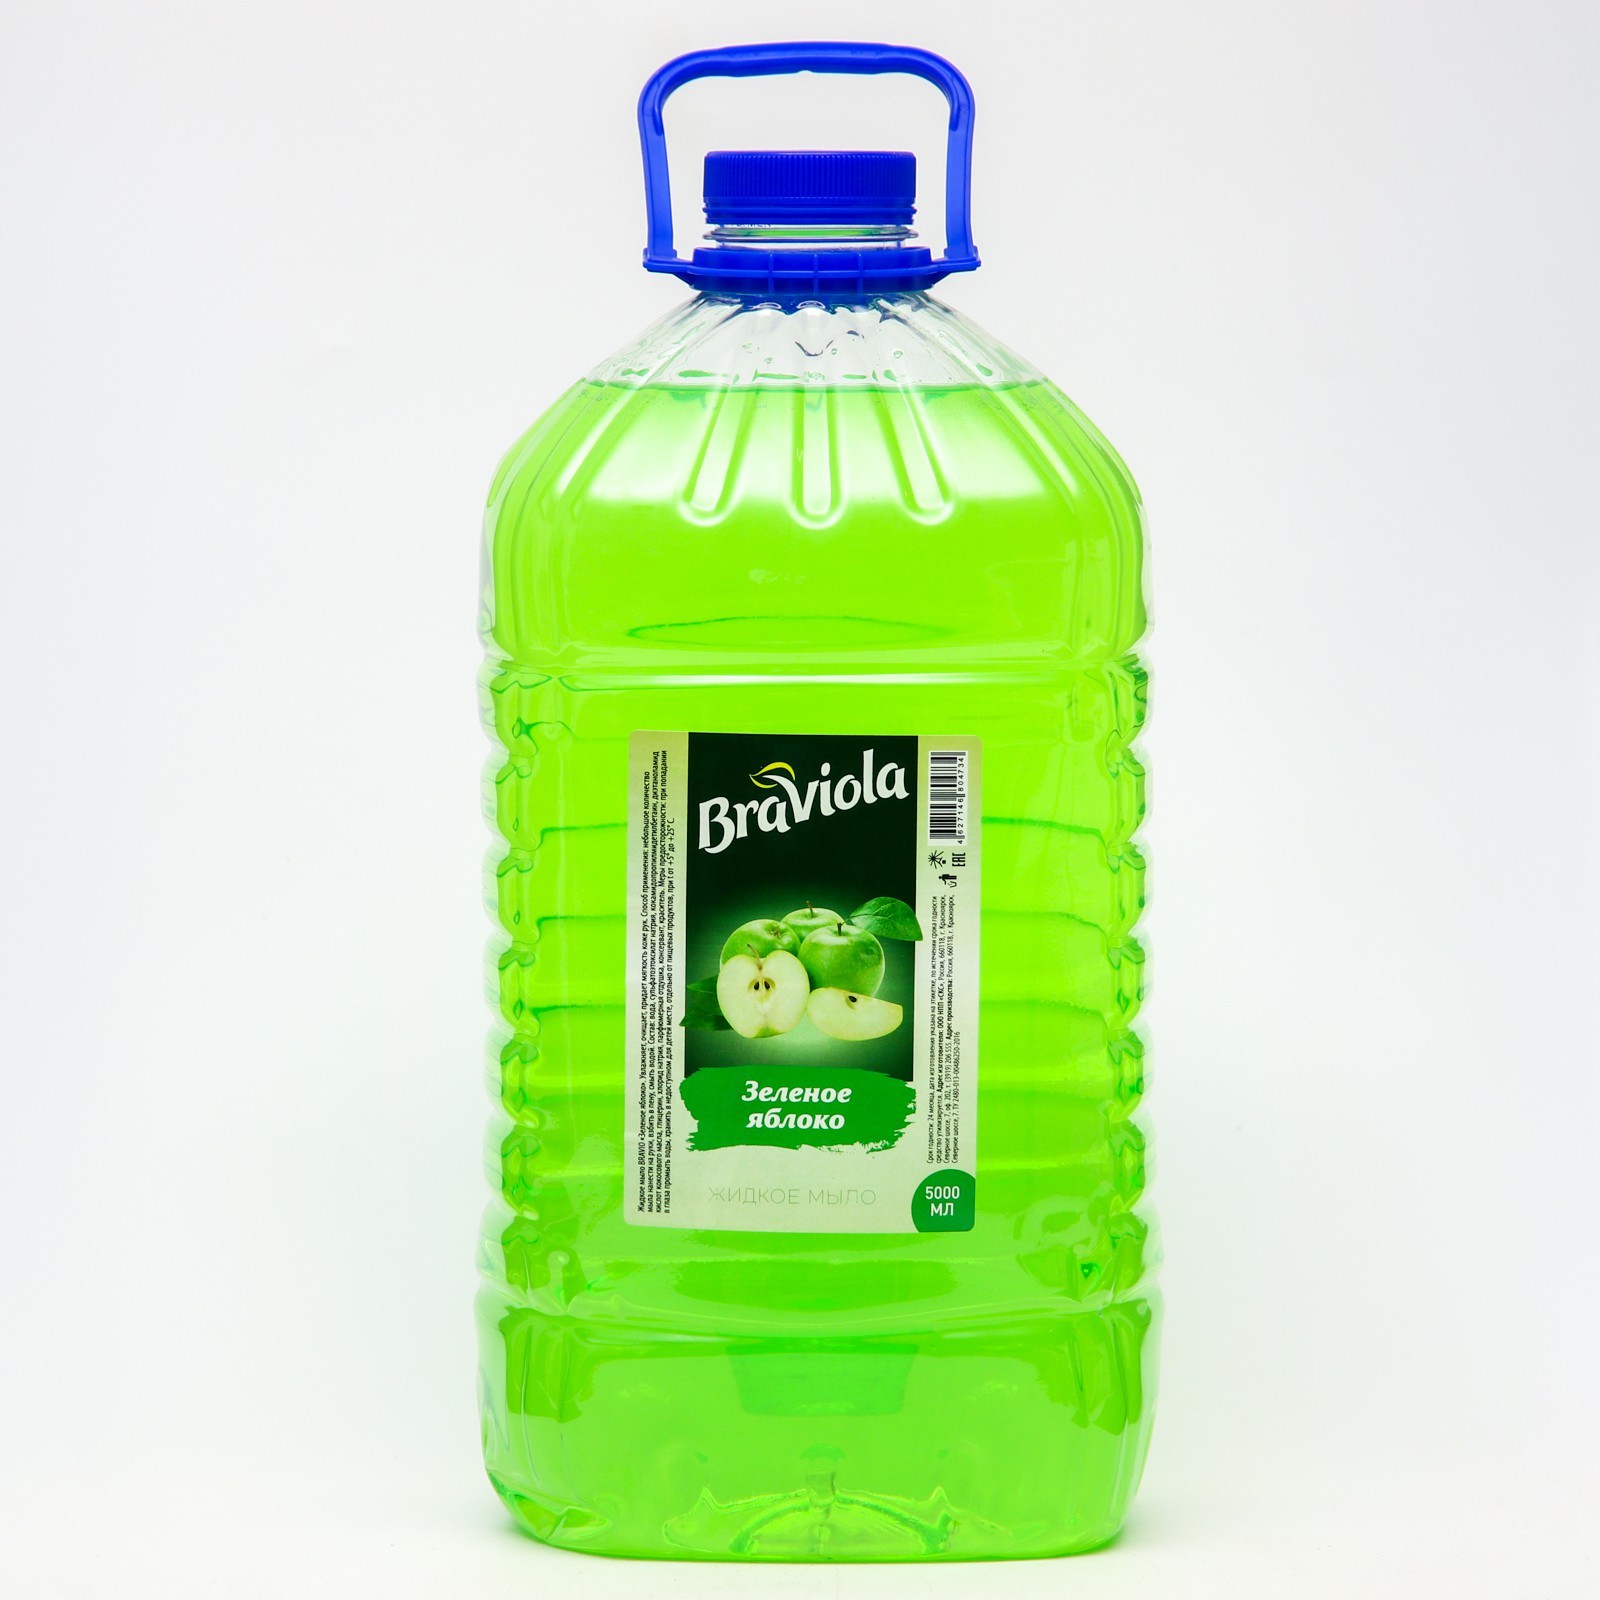 Мыло жидкое Braviola Зеленое яблоко 5 л 1шт мыло жидкое аквалон 5000 мл зеленое яблоко